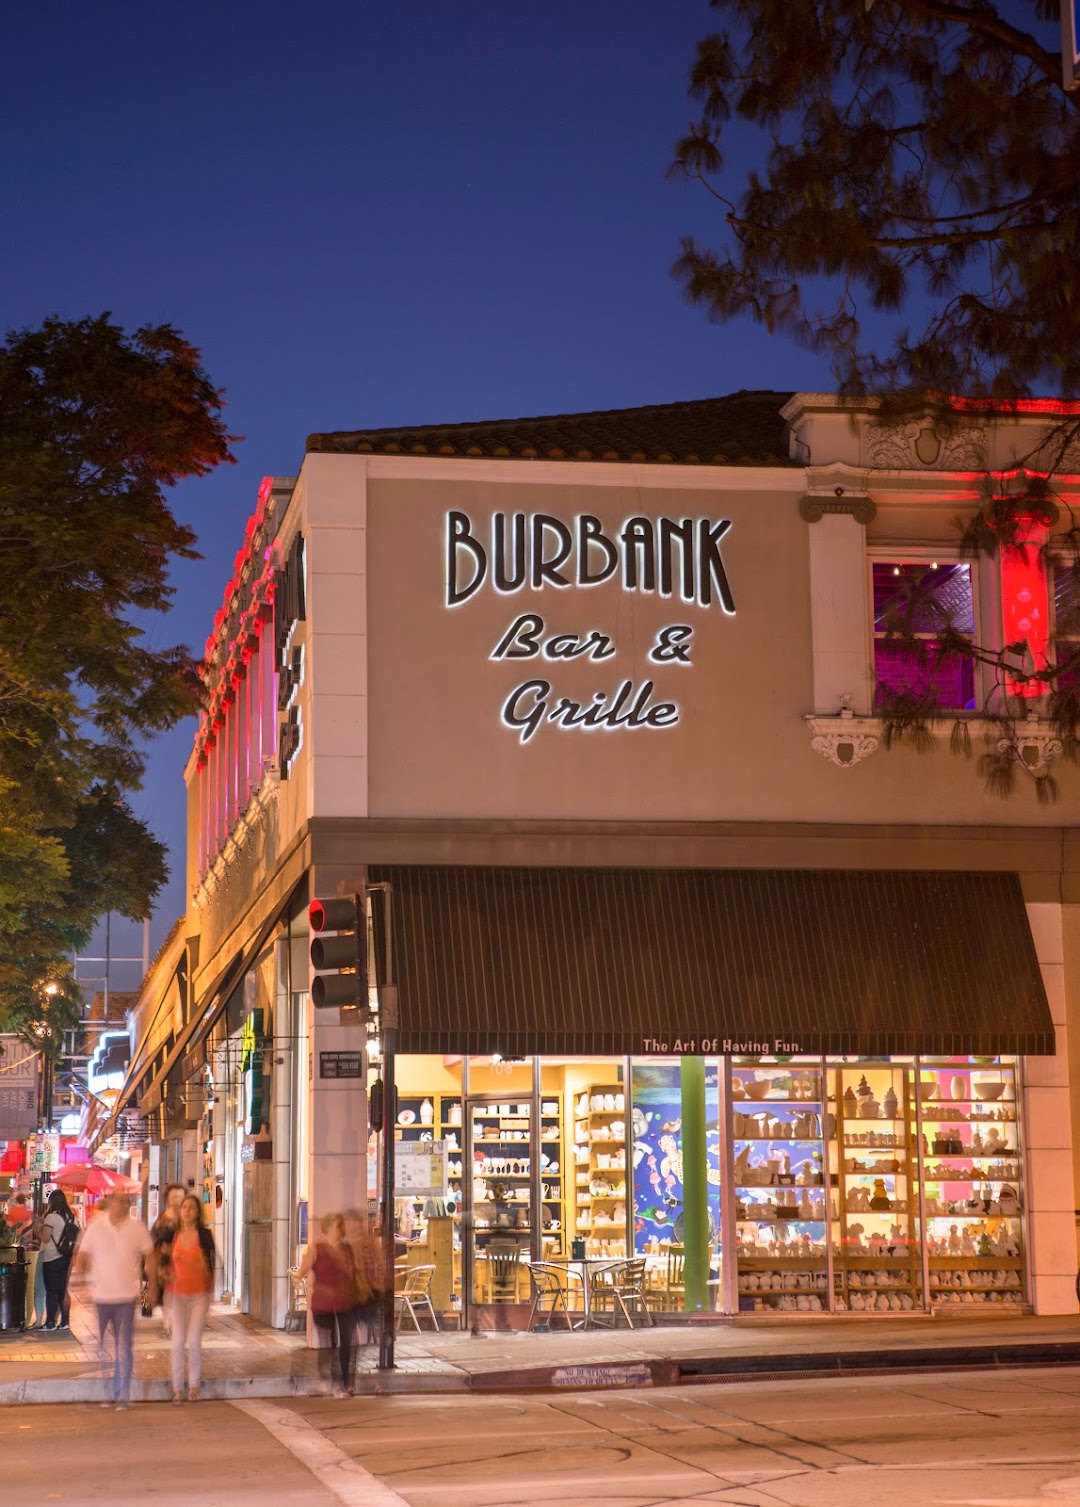 Burbank Bar & Grille